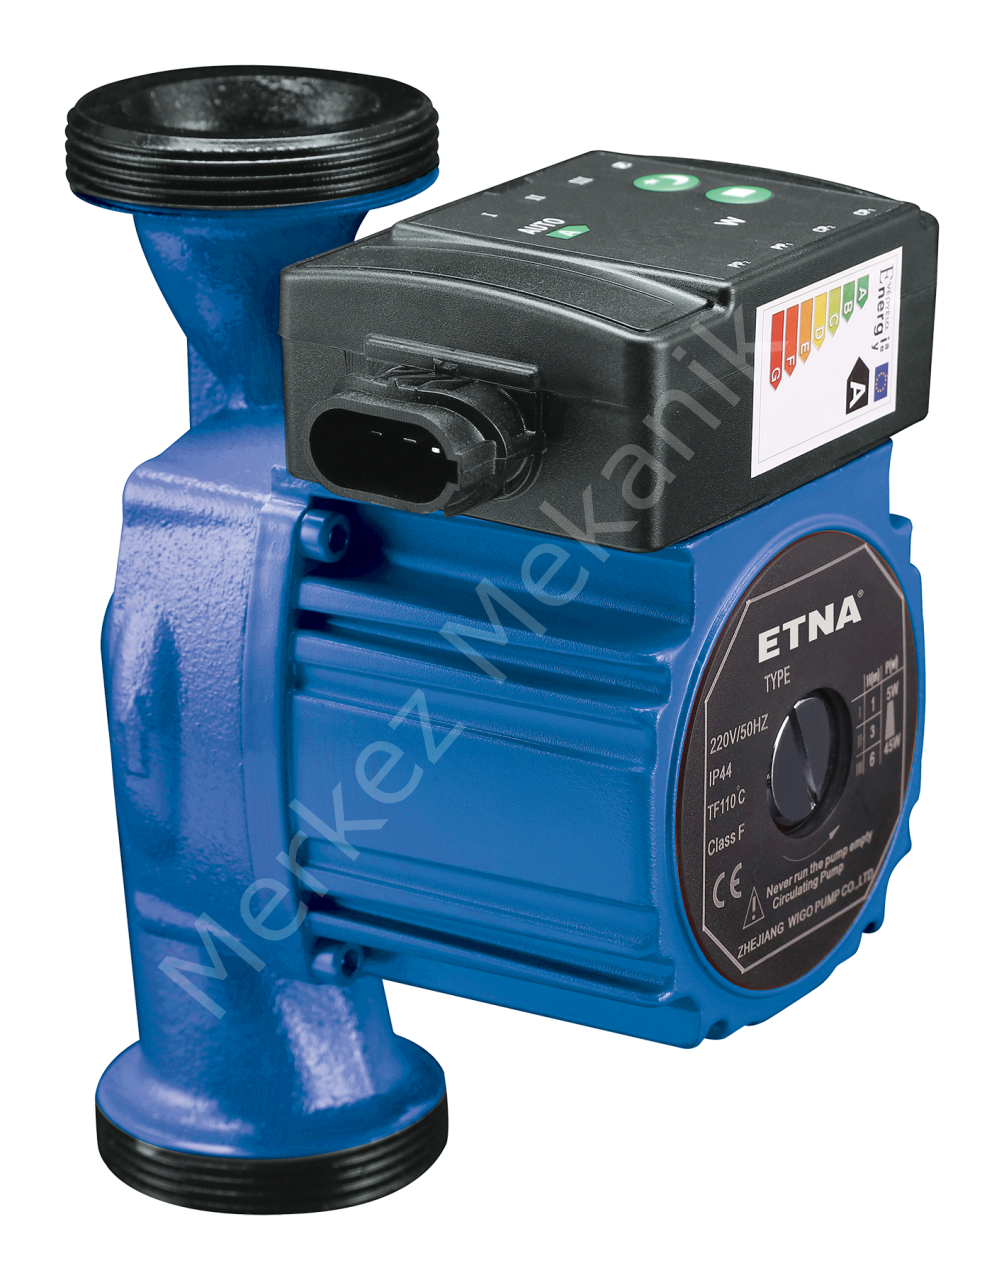 ETNA ECP 25-6-130 Frekans Kontrollü Sirkülasyon Pompası